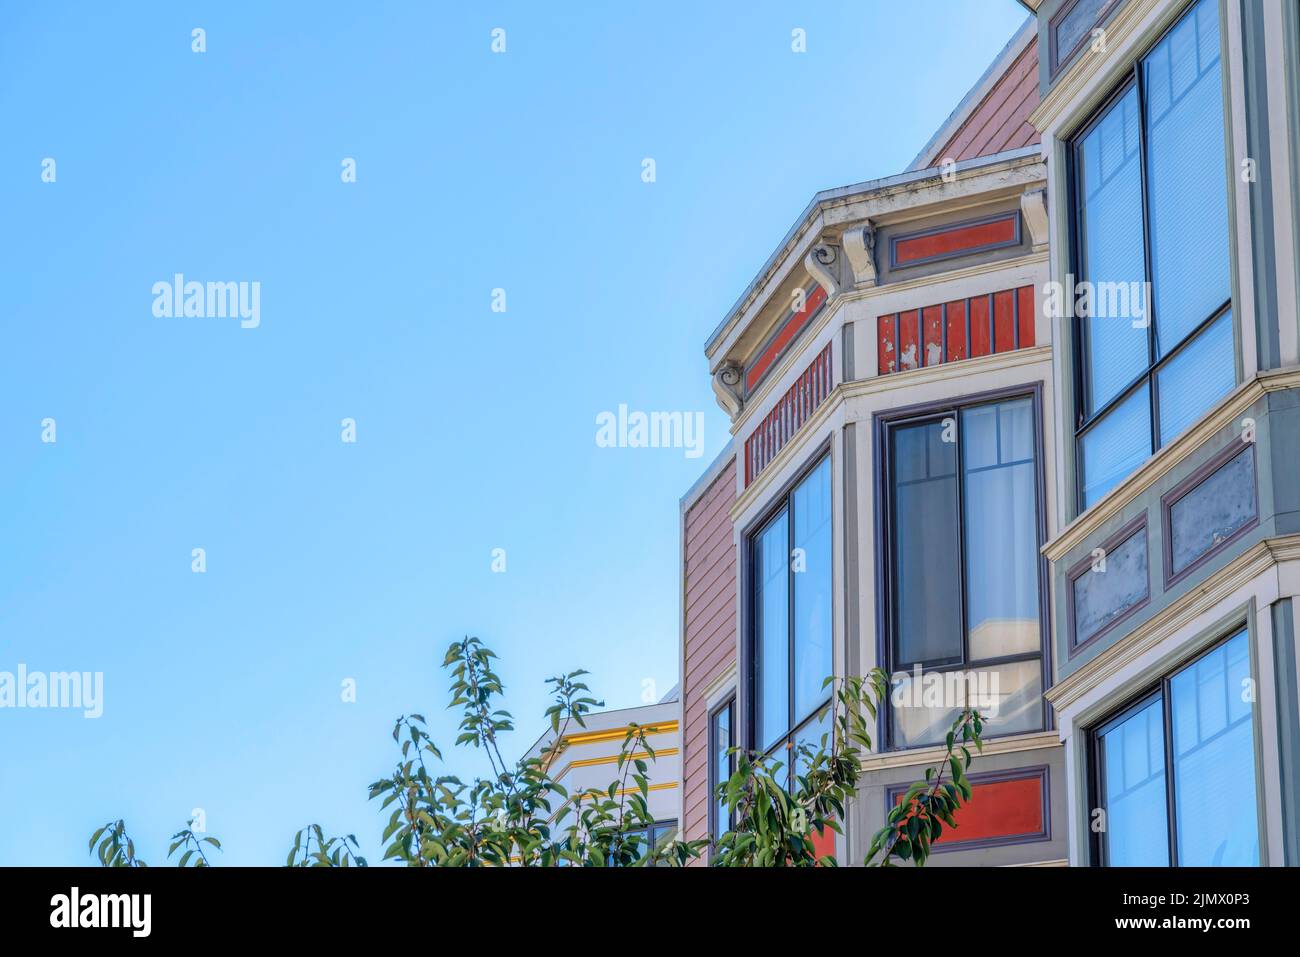 Fenêtres en verre réfléchissant d'une maison à San Francisco, Californie. Maison résidentielle avec des panneaux latéraux en bois d'orange rouge et vue sur les feuilles d'un arbre Banque D'Images